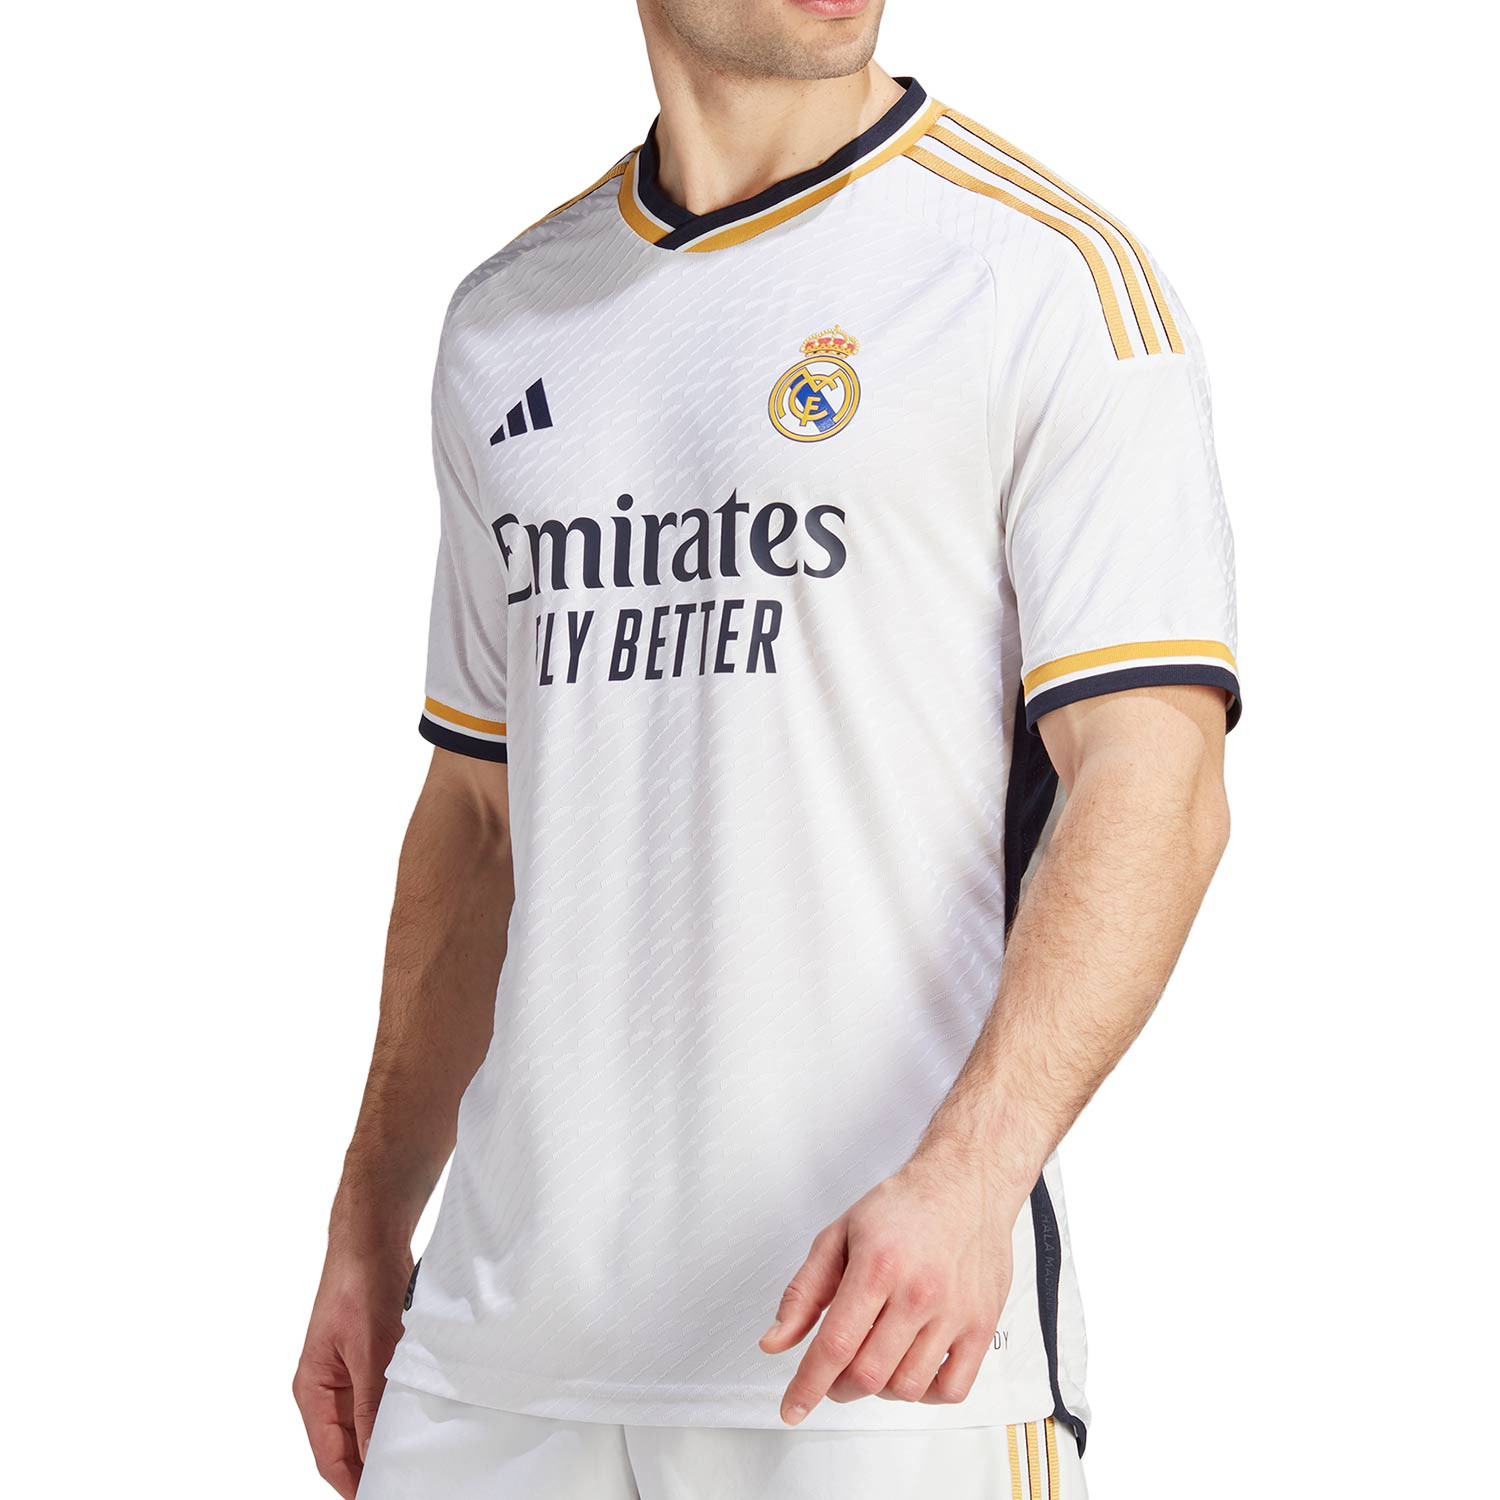 Camisetas y Equipaciones del Real Madrid